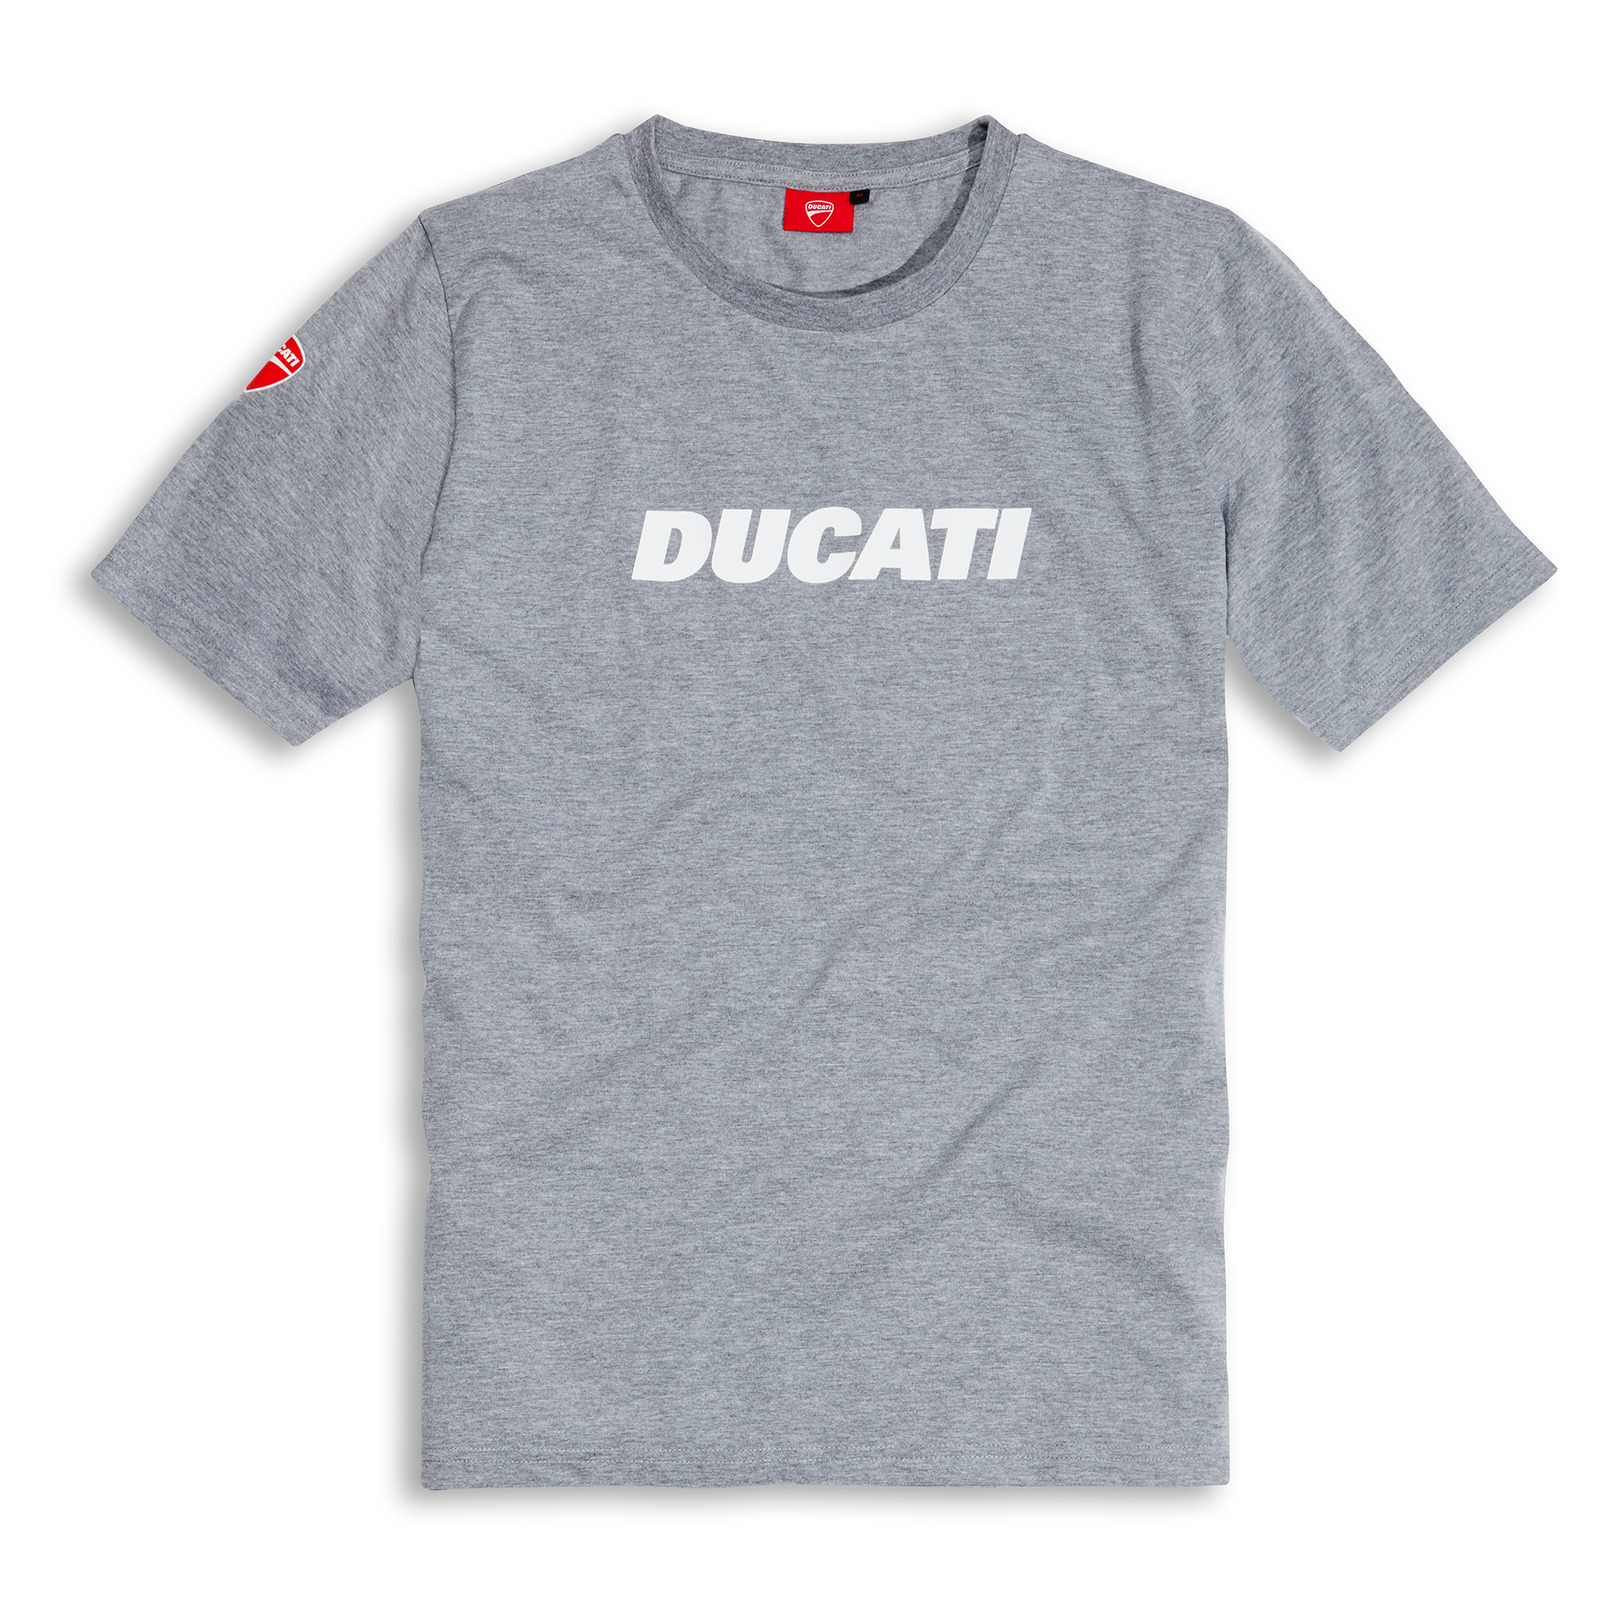 Ducati Genuine Ducatiana 2 Grey T-Shirt | Ducati | Ducati Apparel ...